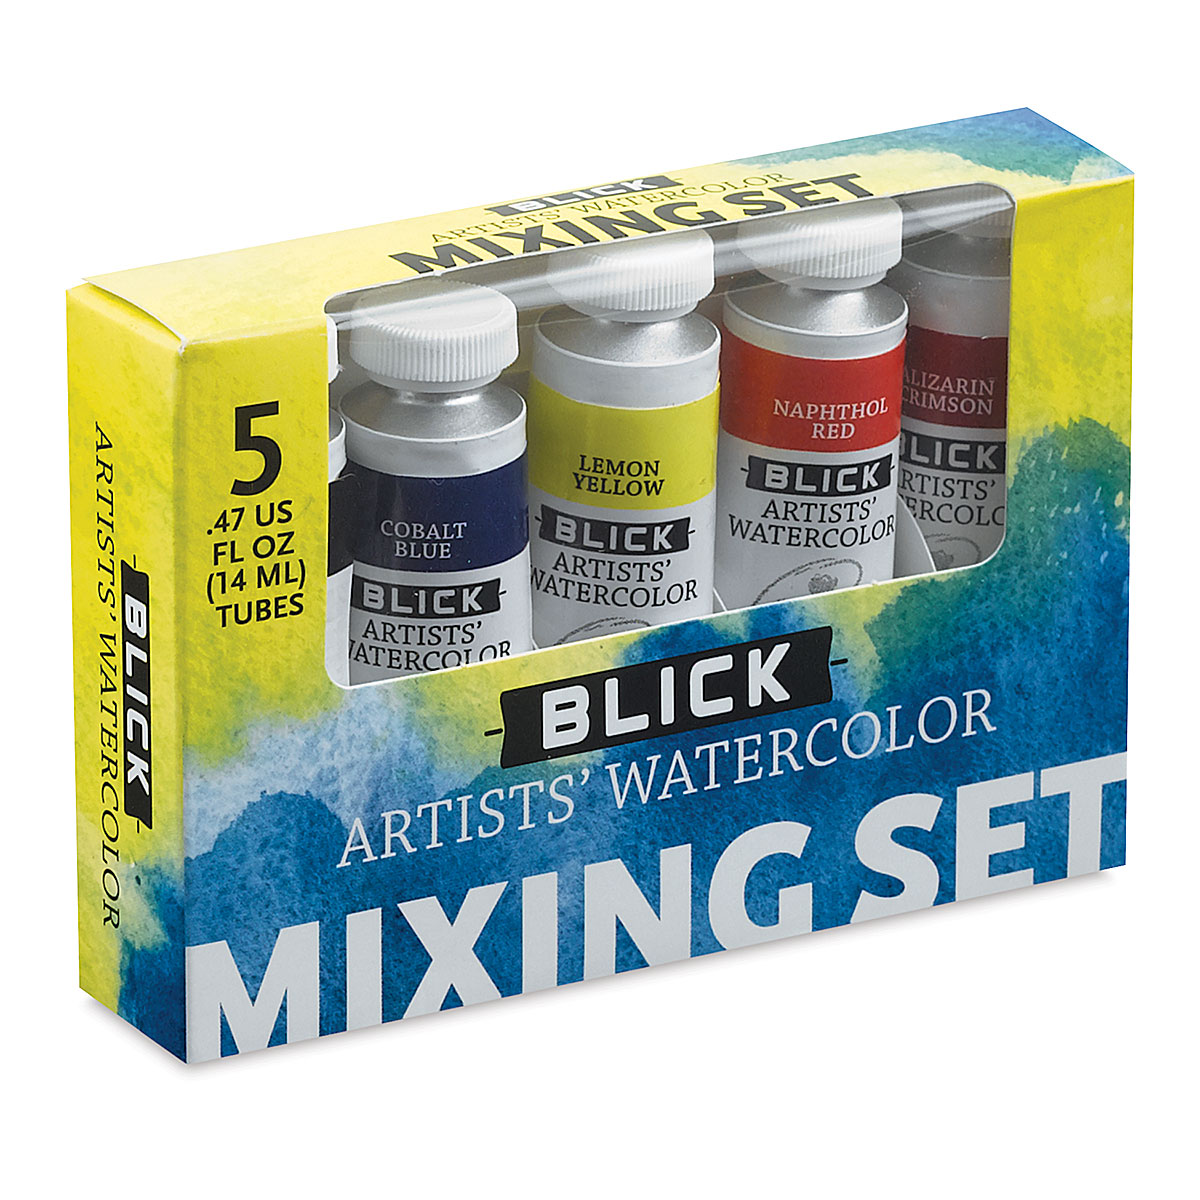 Watercolor Tape  BLICK Art Materials